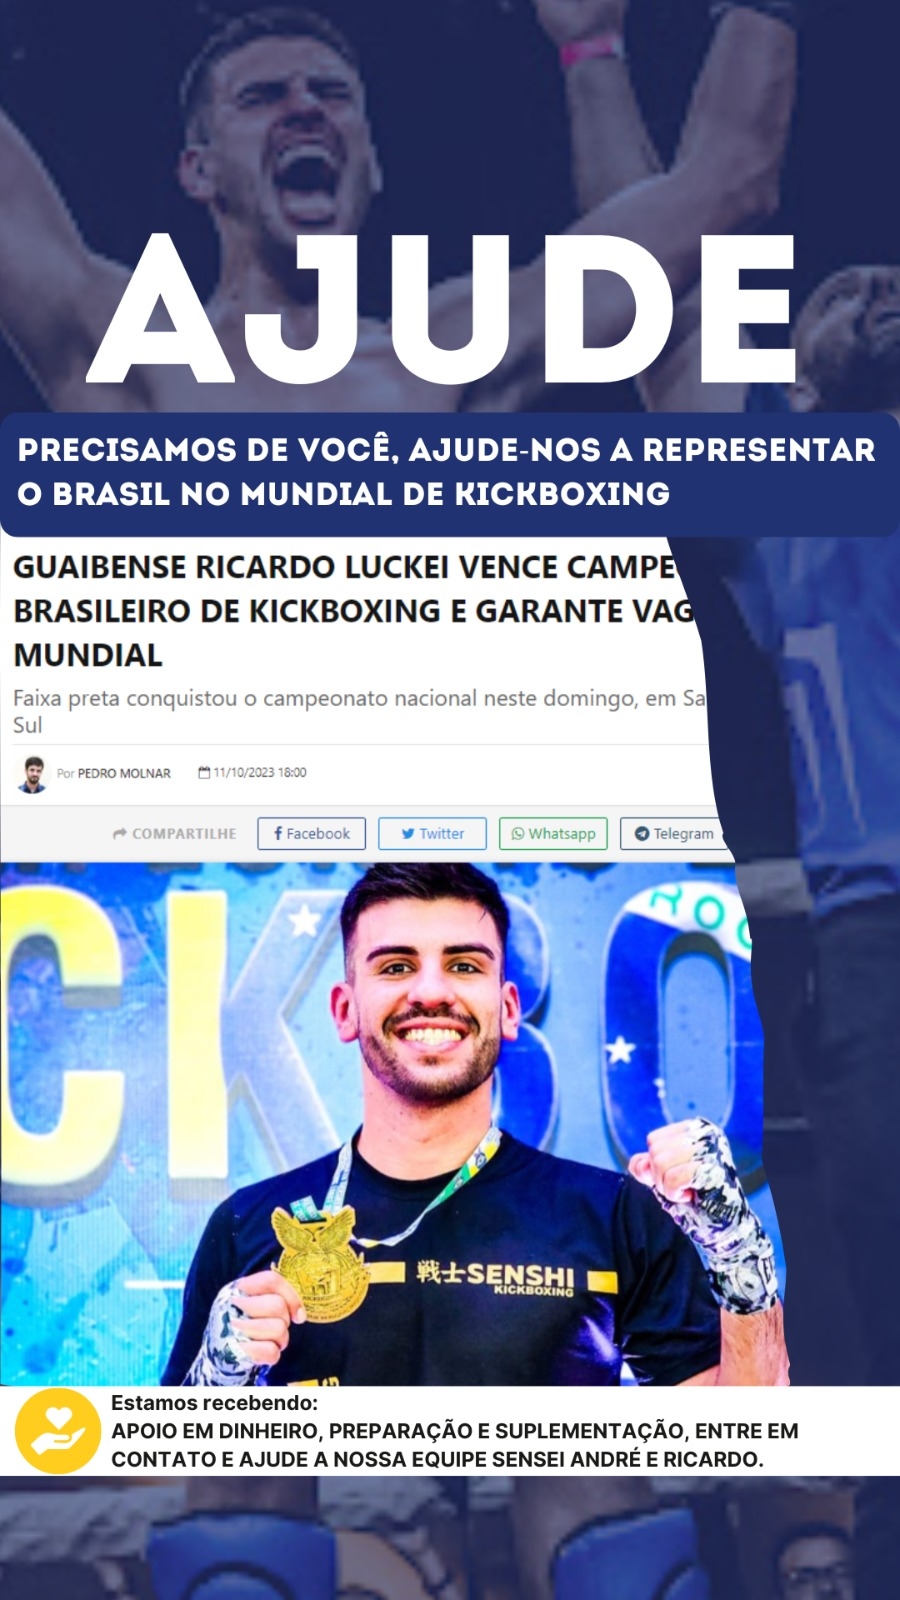 Precisamos de você, ajude-nos a representar o Brasil no mundial de Kickboxing